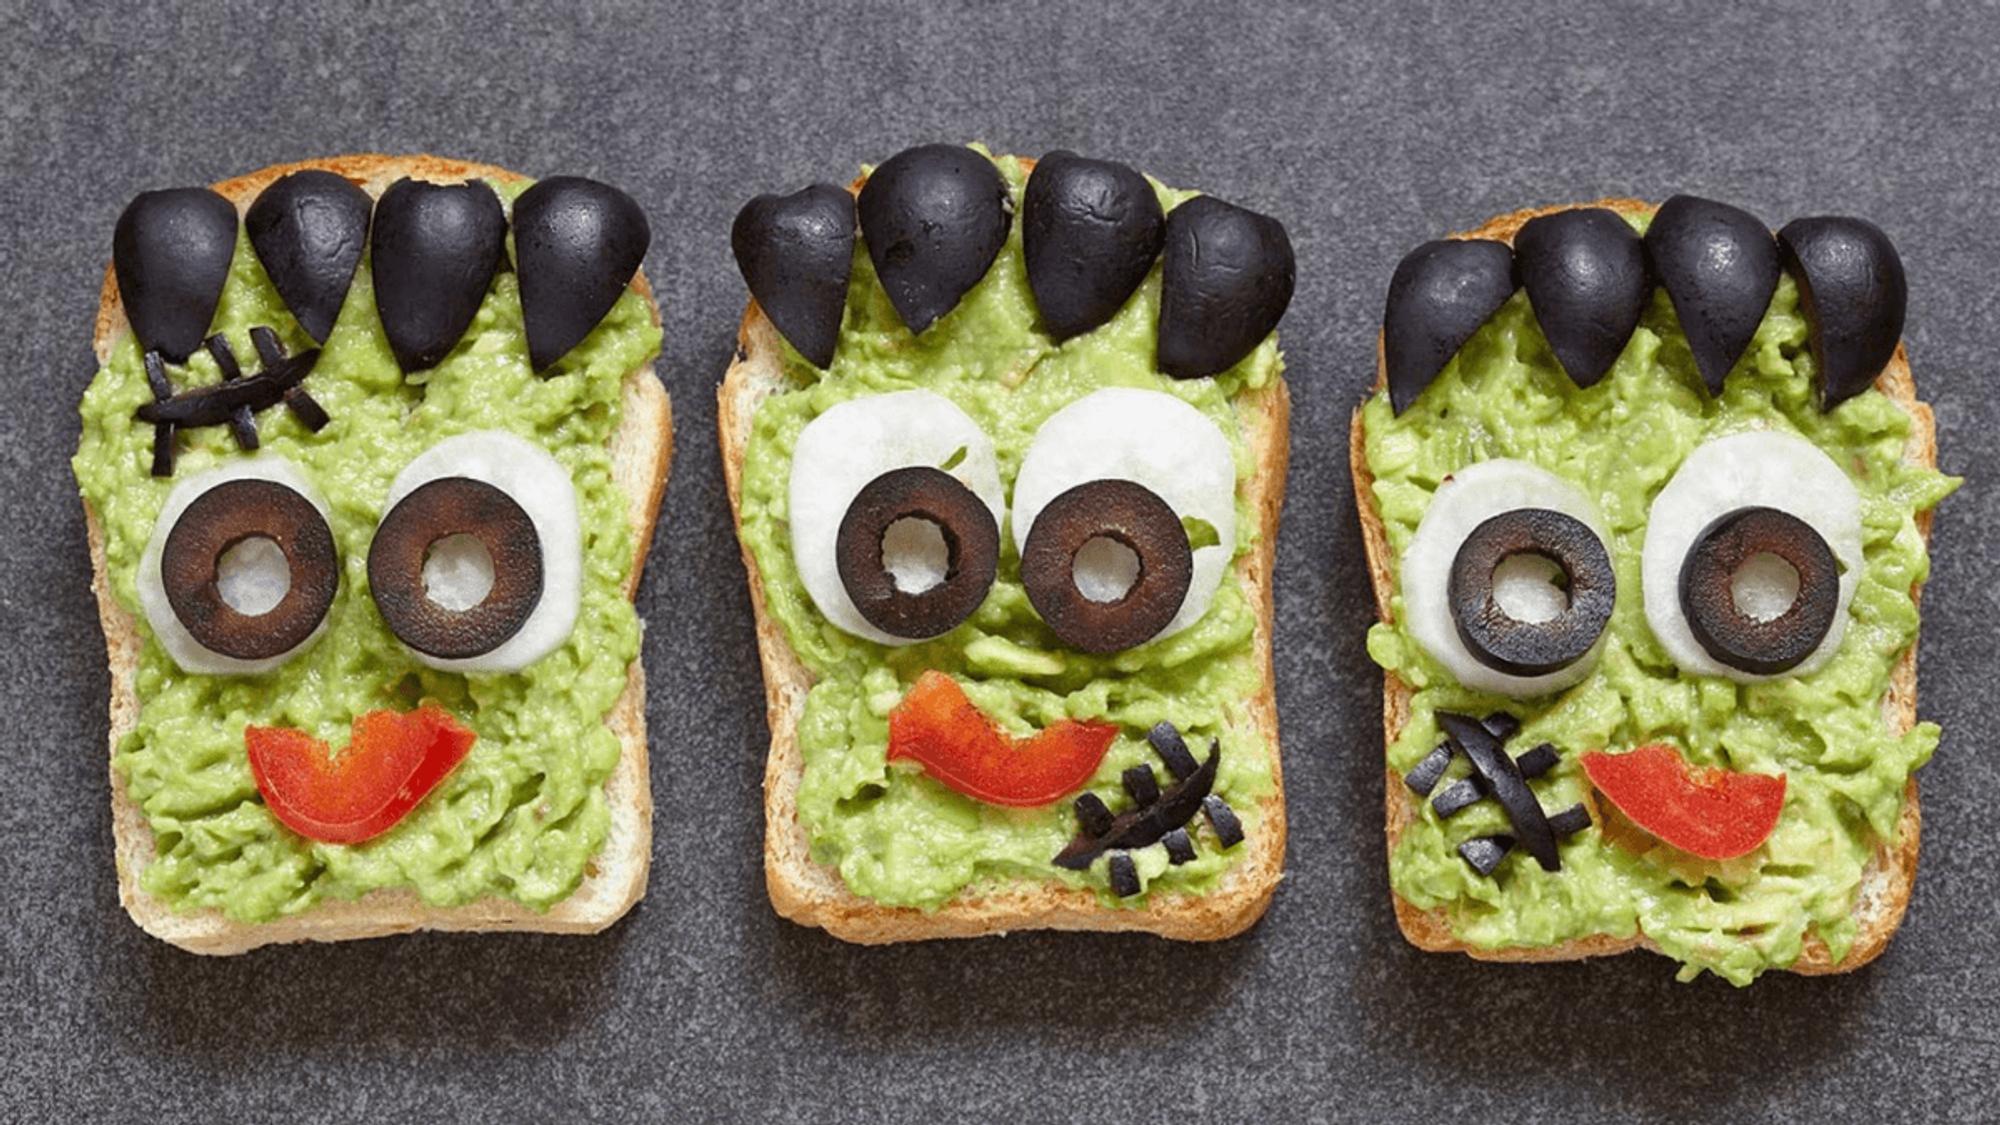 Toastbrot mit Avocado als Frankenstein-Monster gestaltet